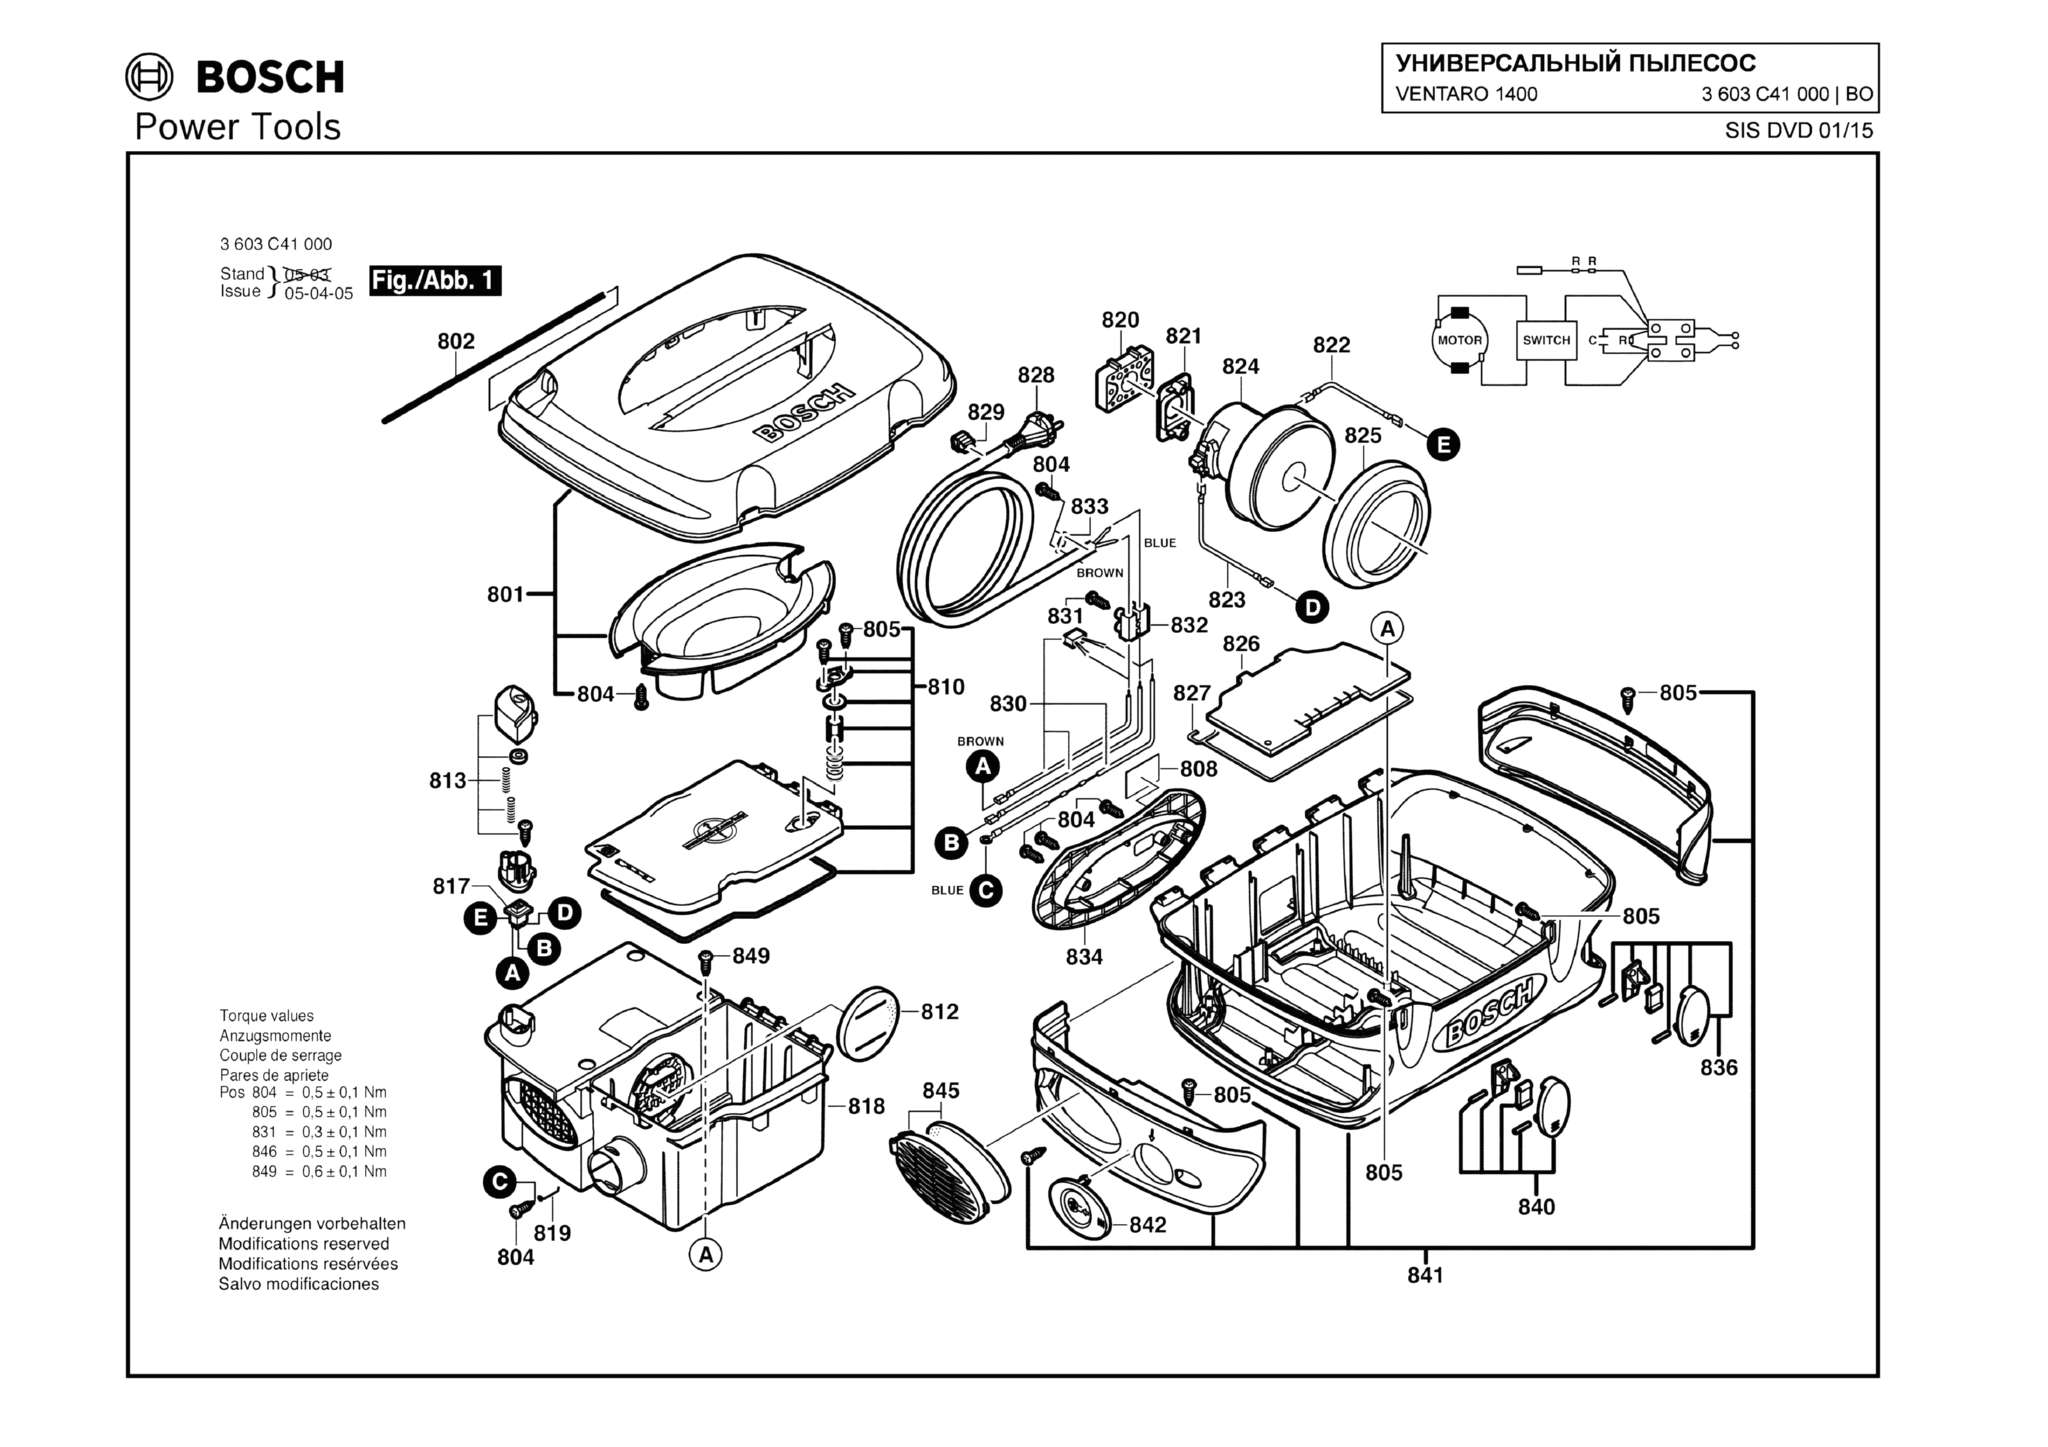 Запчасти, схема и деталировка Bosch VENTARO 1400 (ТИП 3603C41000)